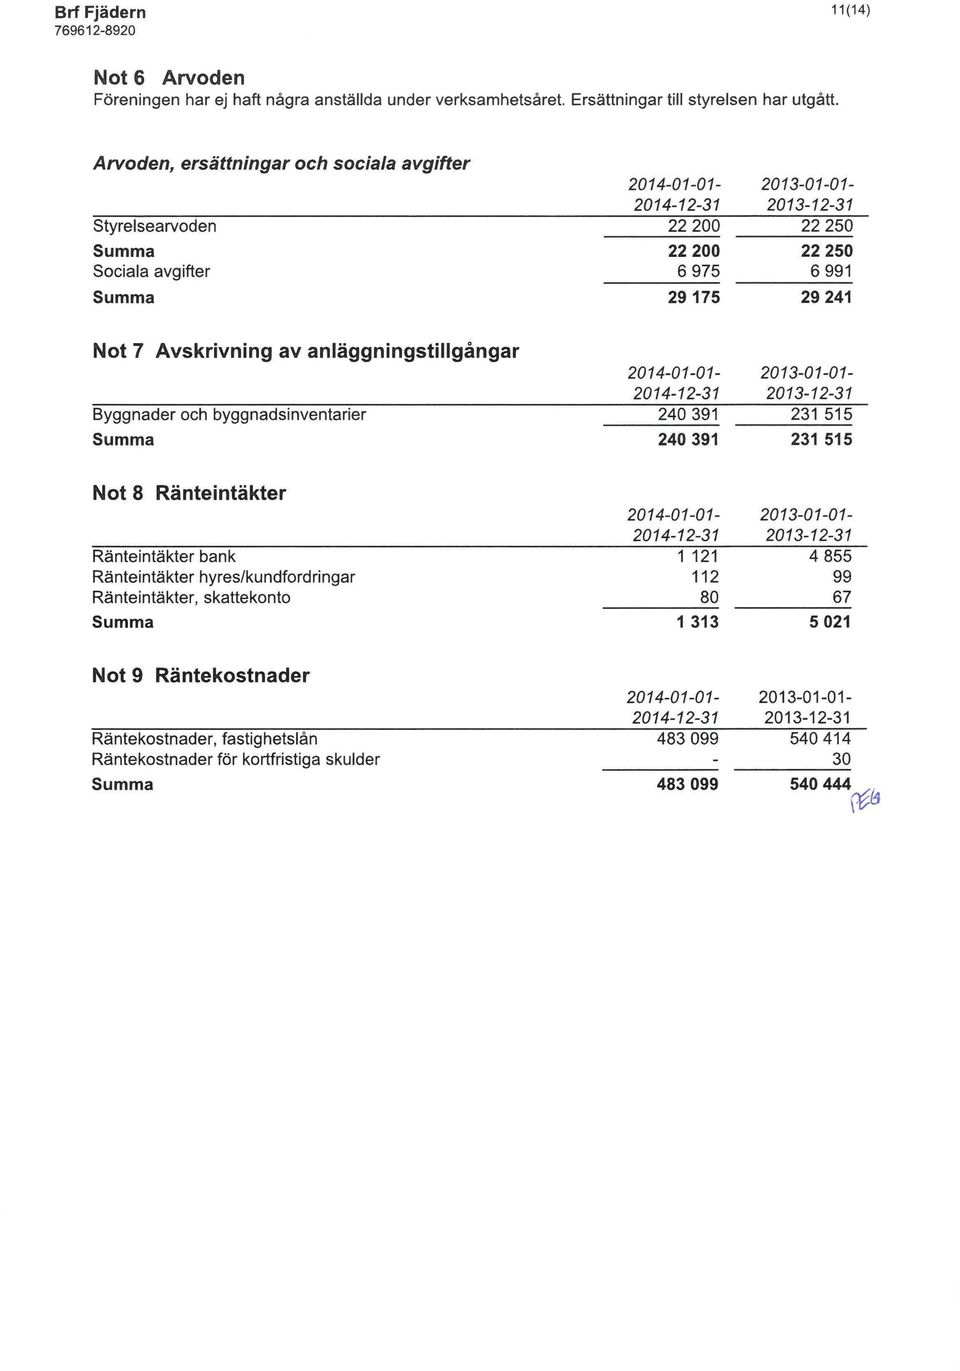 Not 8 Ränteintäkter Ränteintäkter bank Ränteintäkter hyres/kundford ringar Ränteintäkter, skattekonto 1 313 Not 9 Räntekostnader Räntekostnader, fastighetslån